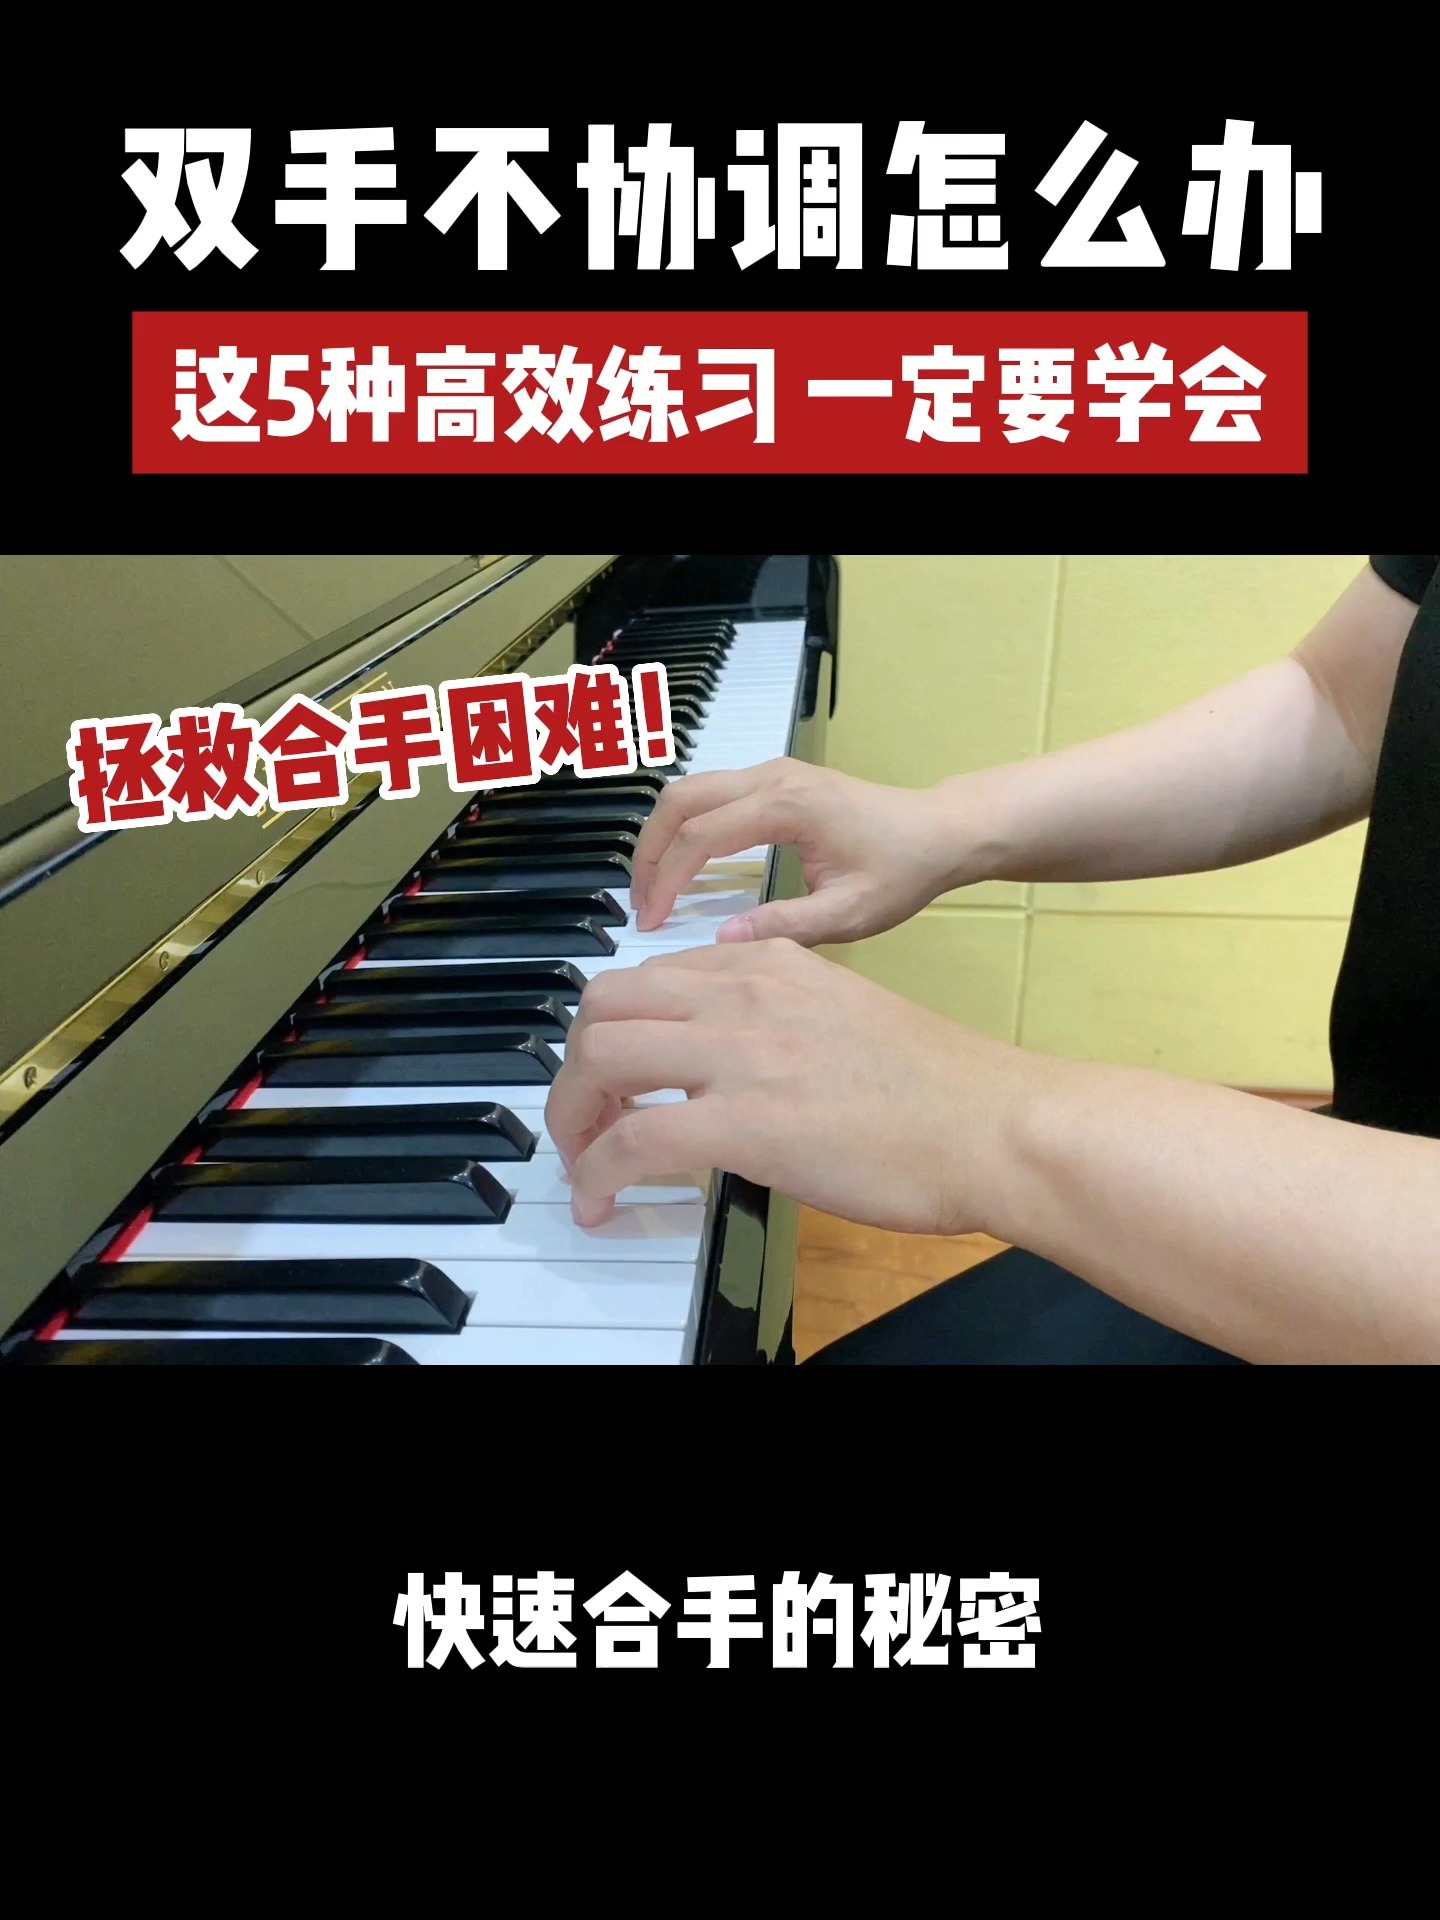 弹钢琴双手不会配合?教你5个练习诀窍!